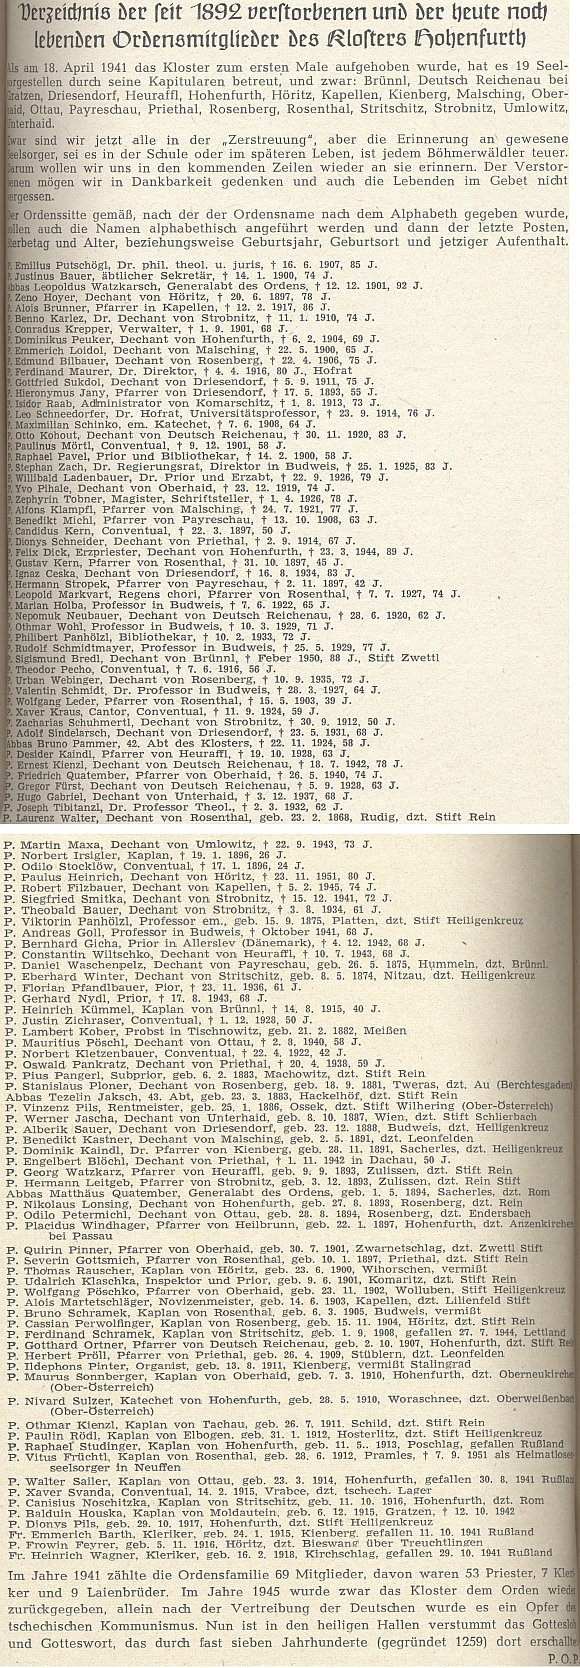 Seznam od roku 1892 zemřelých a v roce 1952 dosud žijících řádových bratří vyšebrodských, podepsaný P.O.P. (mohl by to být páter Odilo Petermichl /1894-1970/)